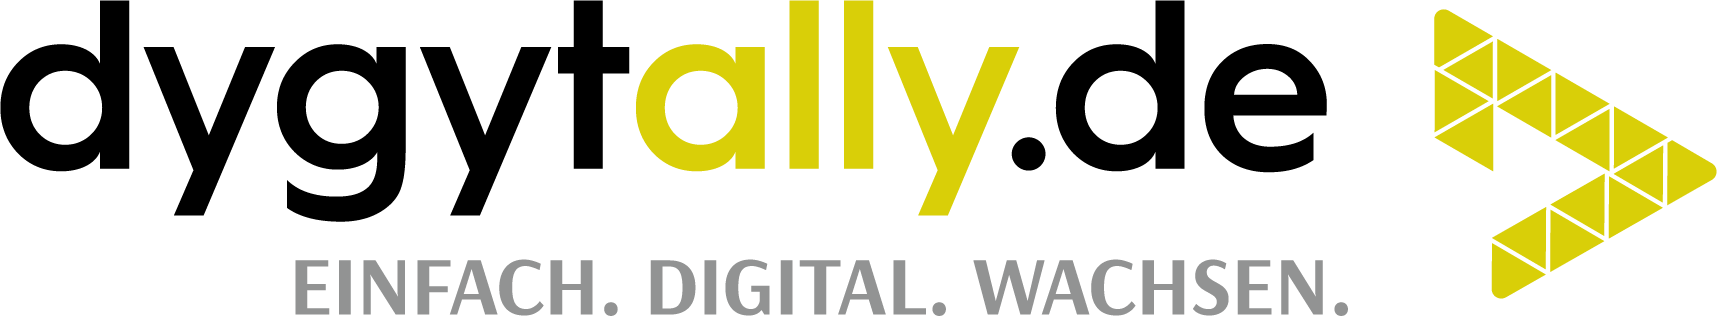 dygytally.de GmbH